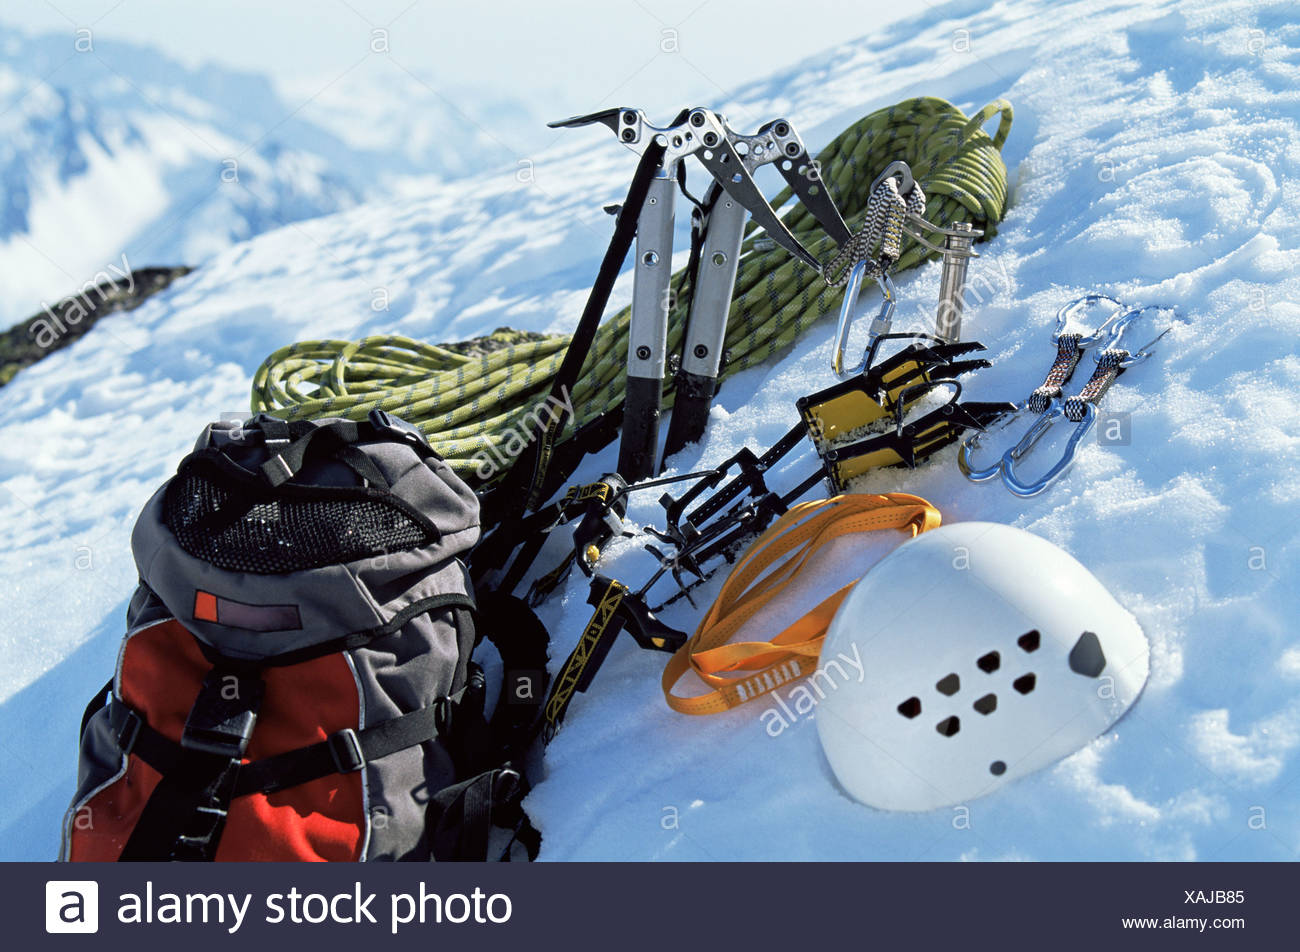 mountain climbing equipment